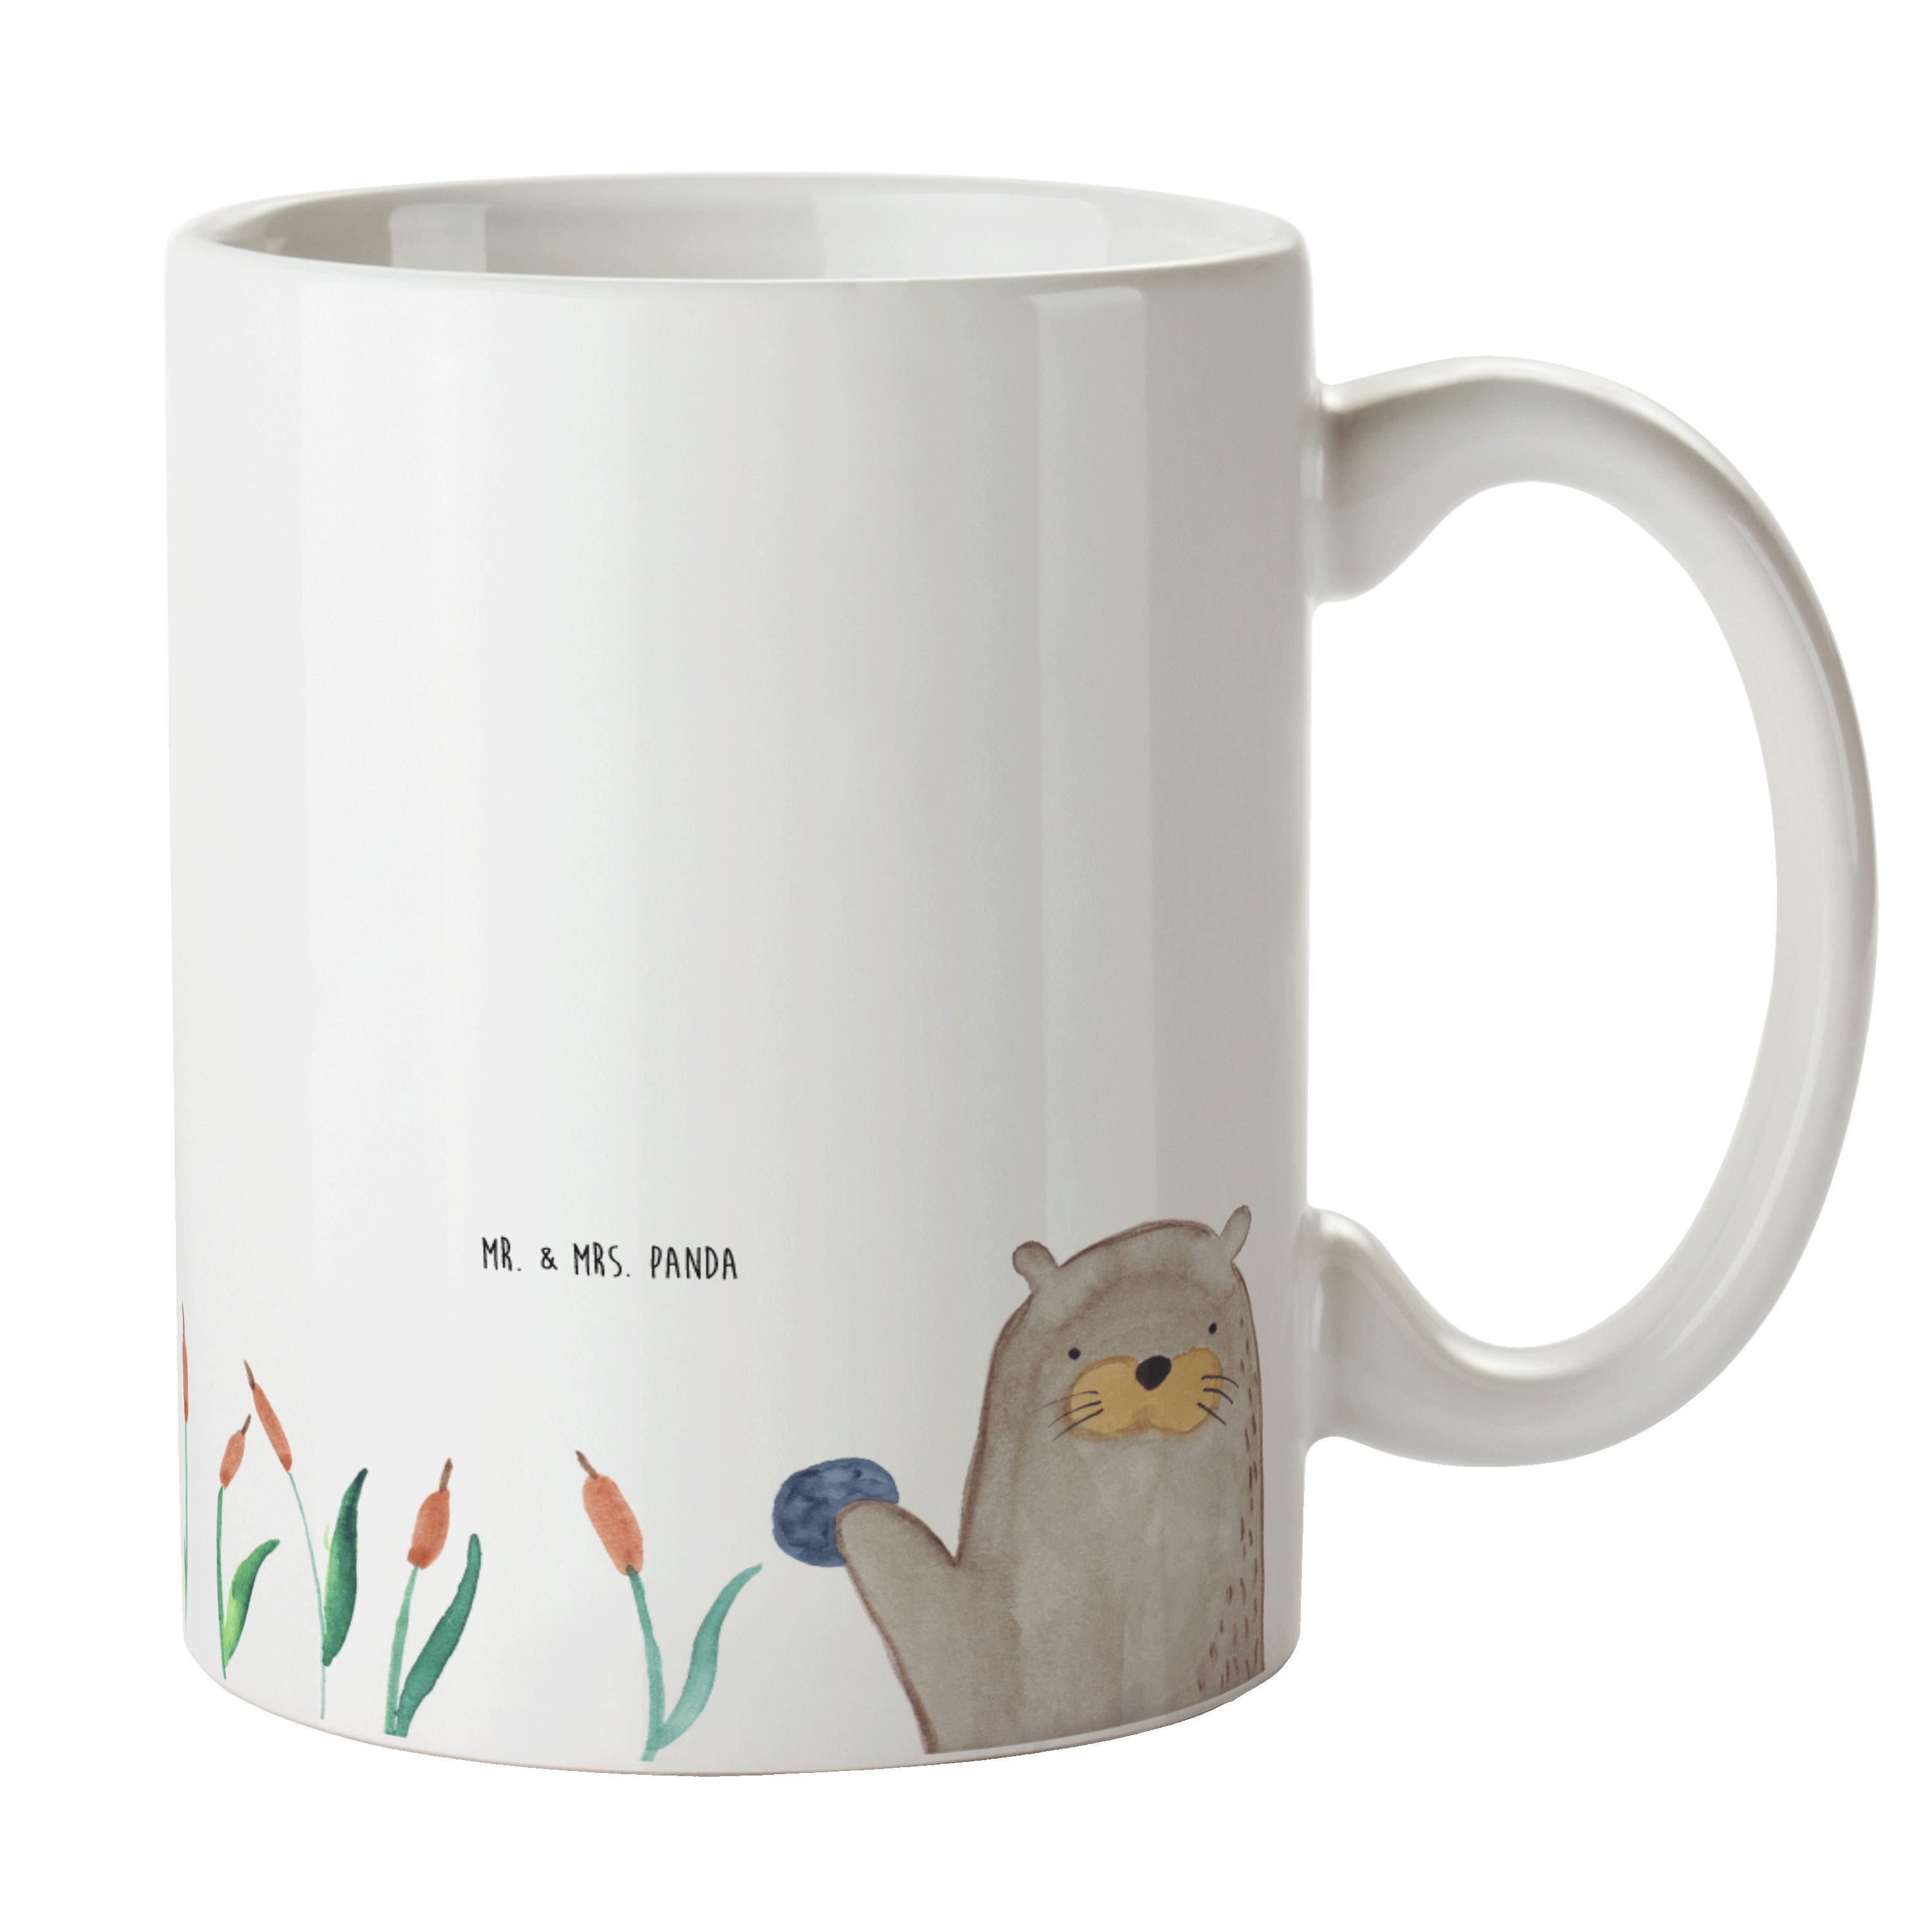 Mr. & Mrs. Panda Tasse Otter mit Stein - Weiß - Geschenk, Fischotter, Teetasse, Kaffeetasse, Keramik